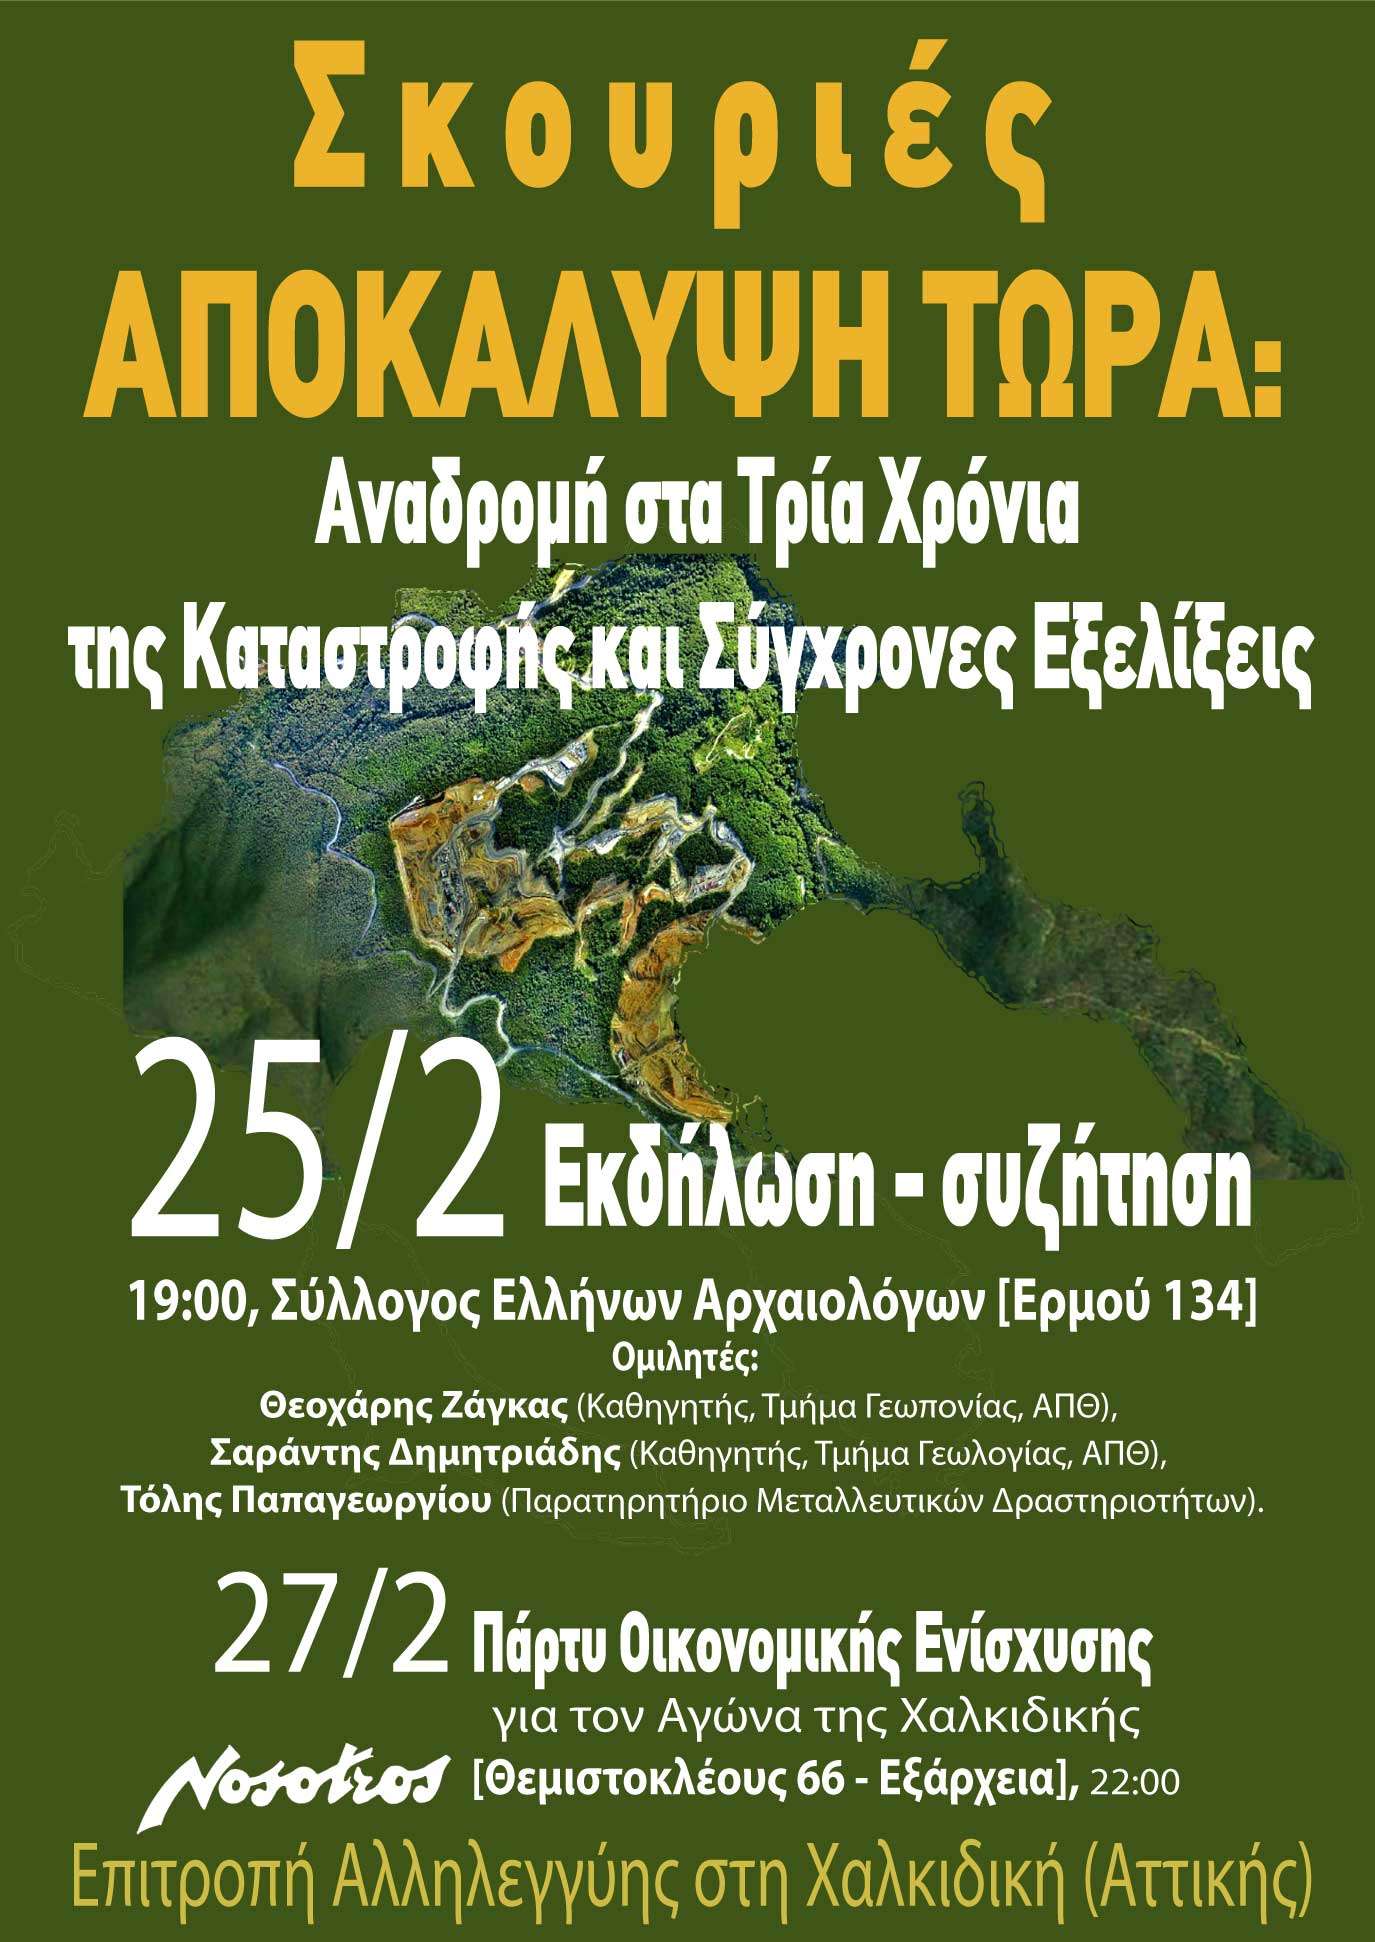 Αθήνα: Σκουριές – Αναδρομή στα τρία χρόνια (25 και 27/02)